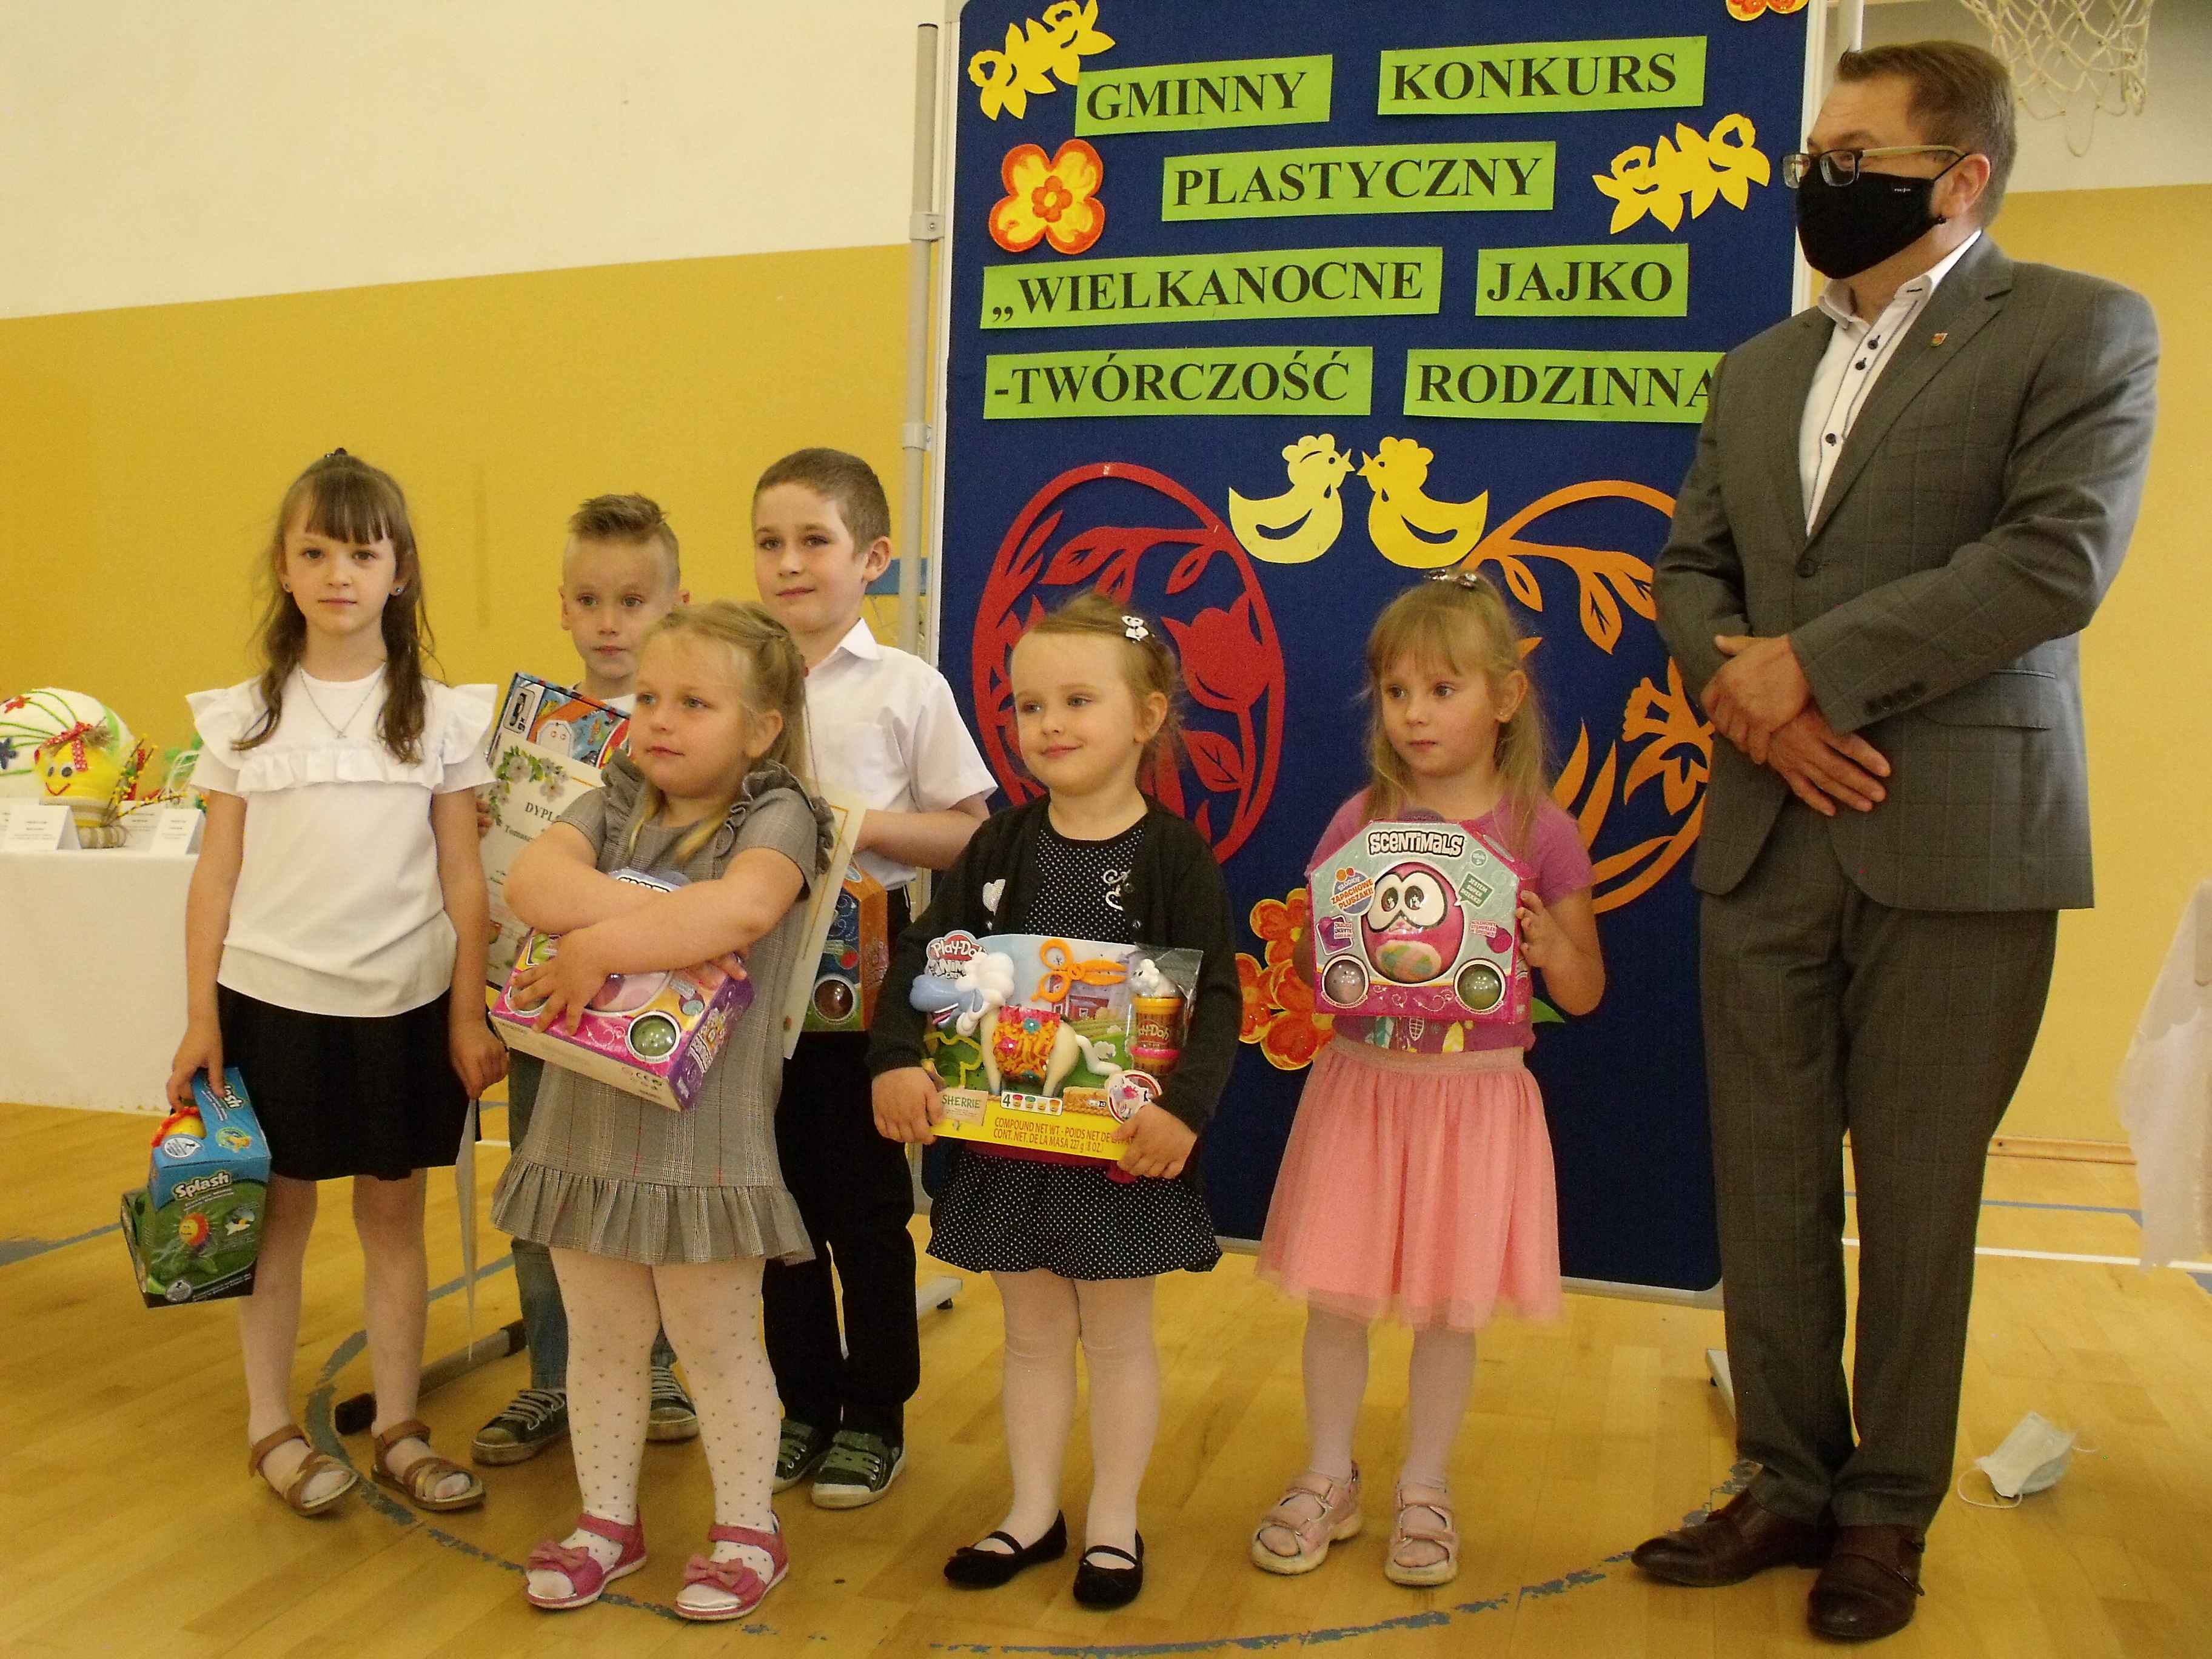 Sekretarz Gminy Hrubieszów oraz cztery dziewczynki i dwóch chłopców trzymających nagrody otrzymane w konkursie.